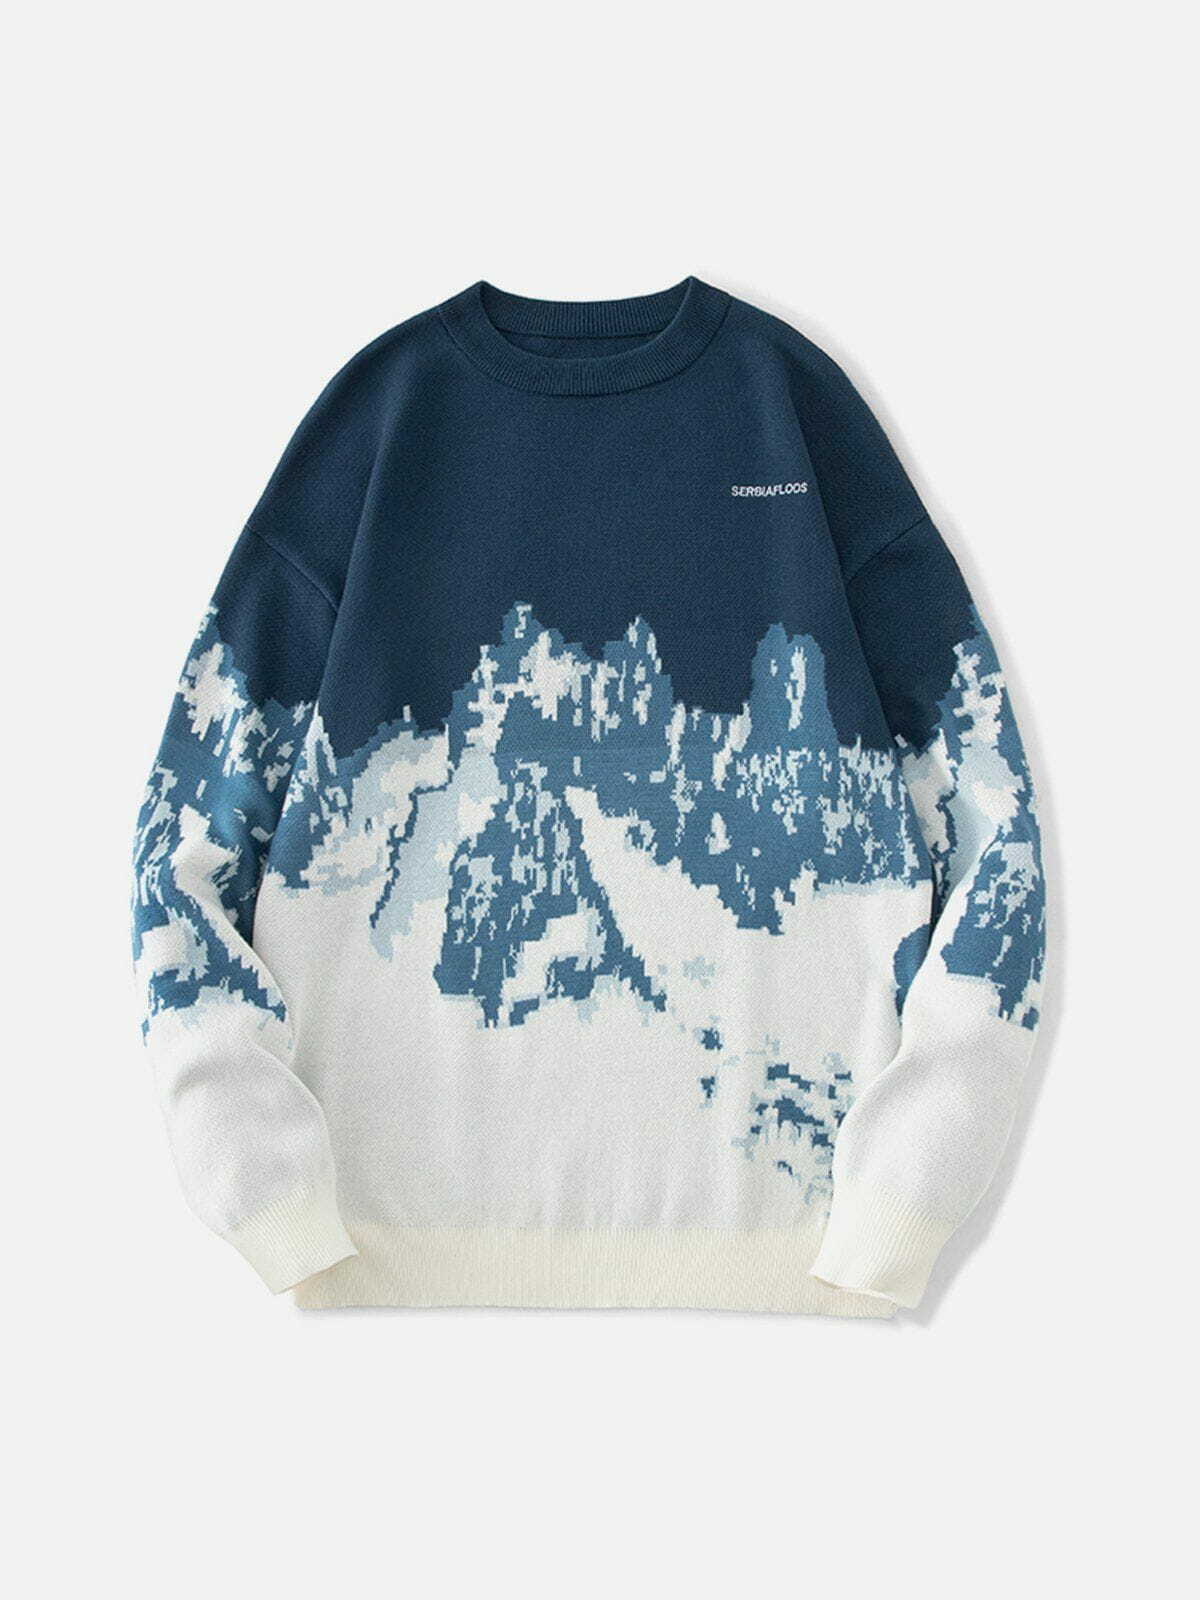 mountain landscape jacquard sweater edgy y2k streetwear 2072